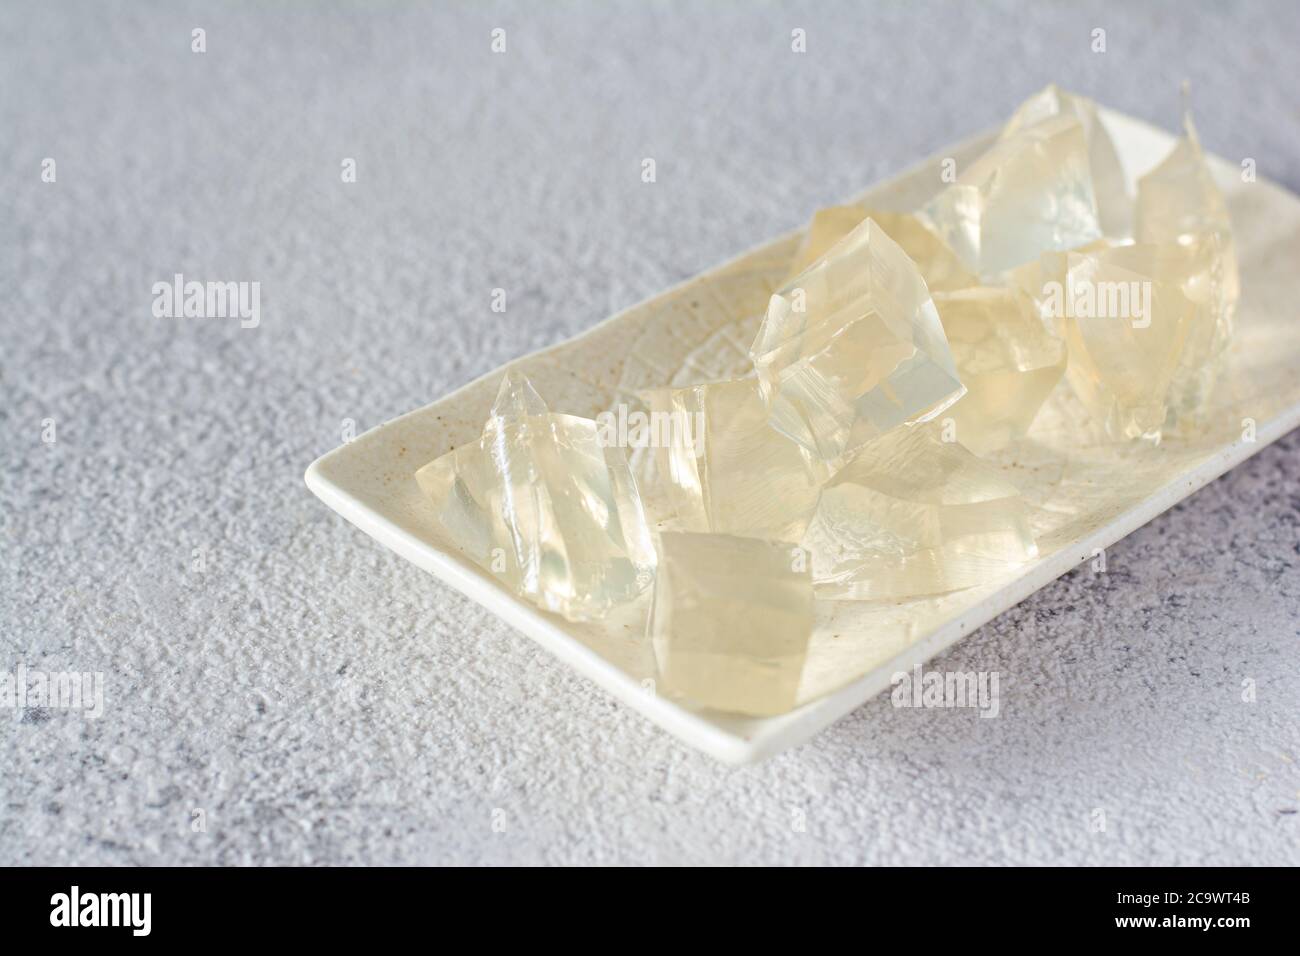 Gelatine, Agar-Agar, gallertartige Masse (Würfel in Form von Kristallen)  auf grauem Grund. Geliermittel (Kollagen) für kulinarische Süßwaren  Stockfotografie - Alamy